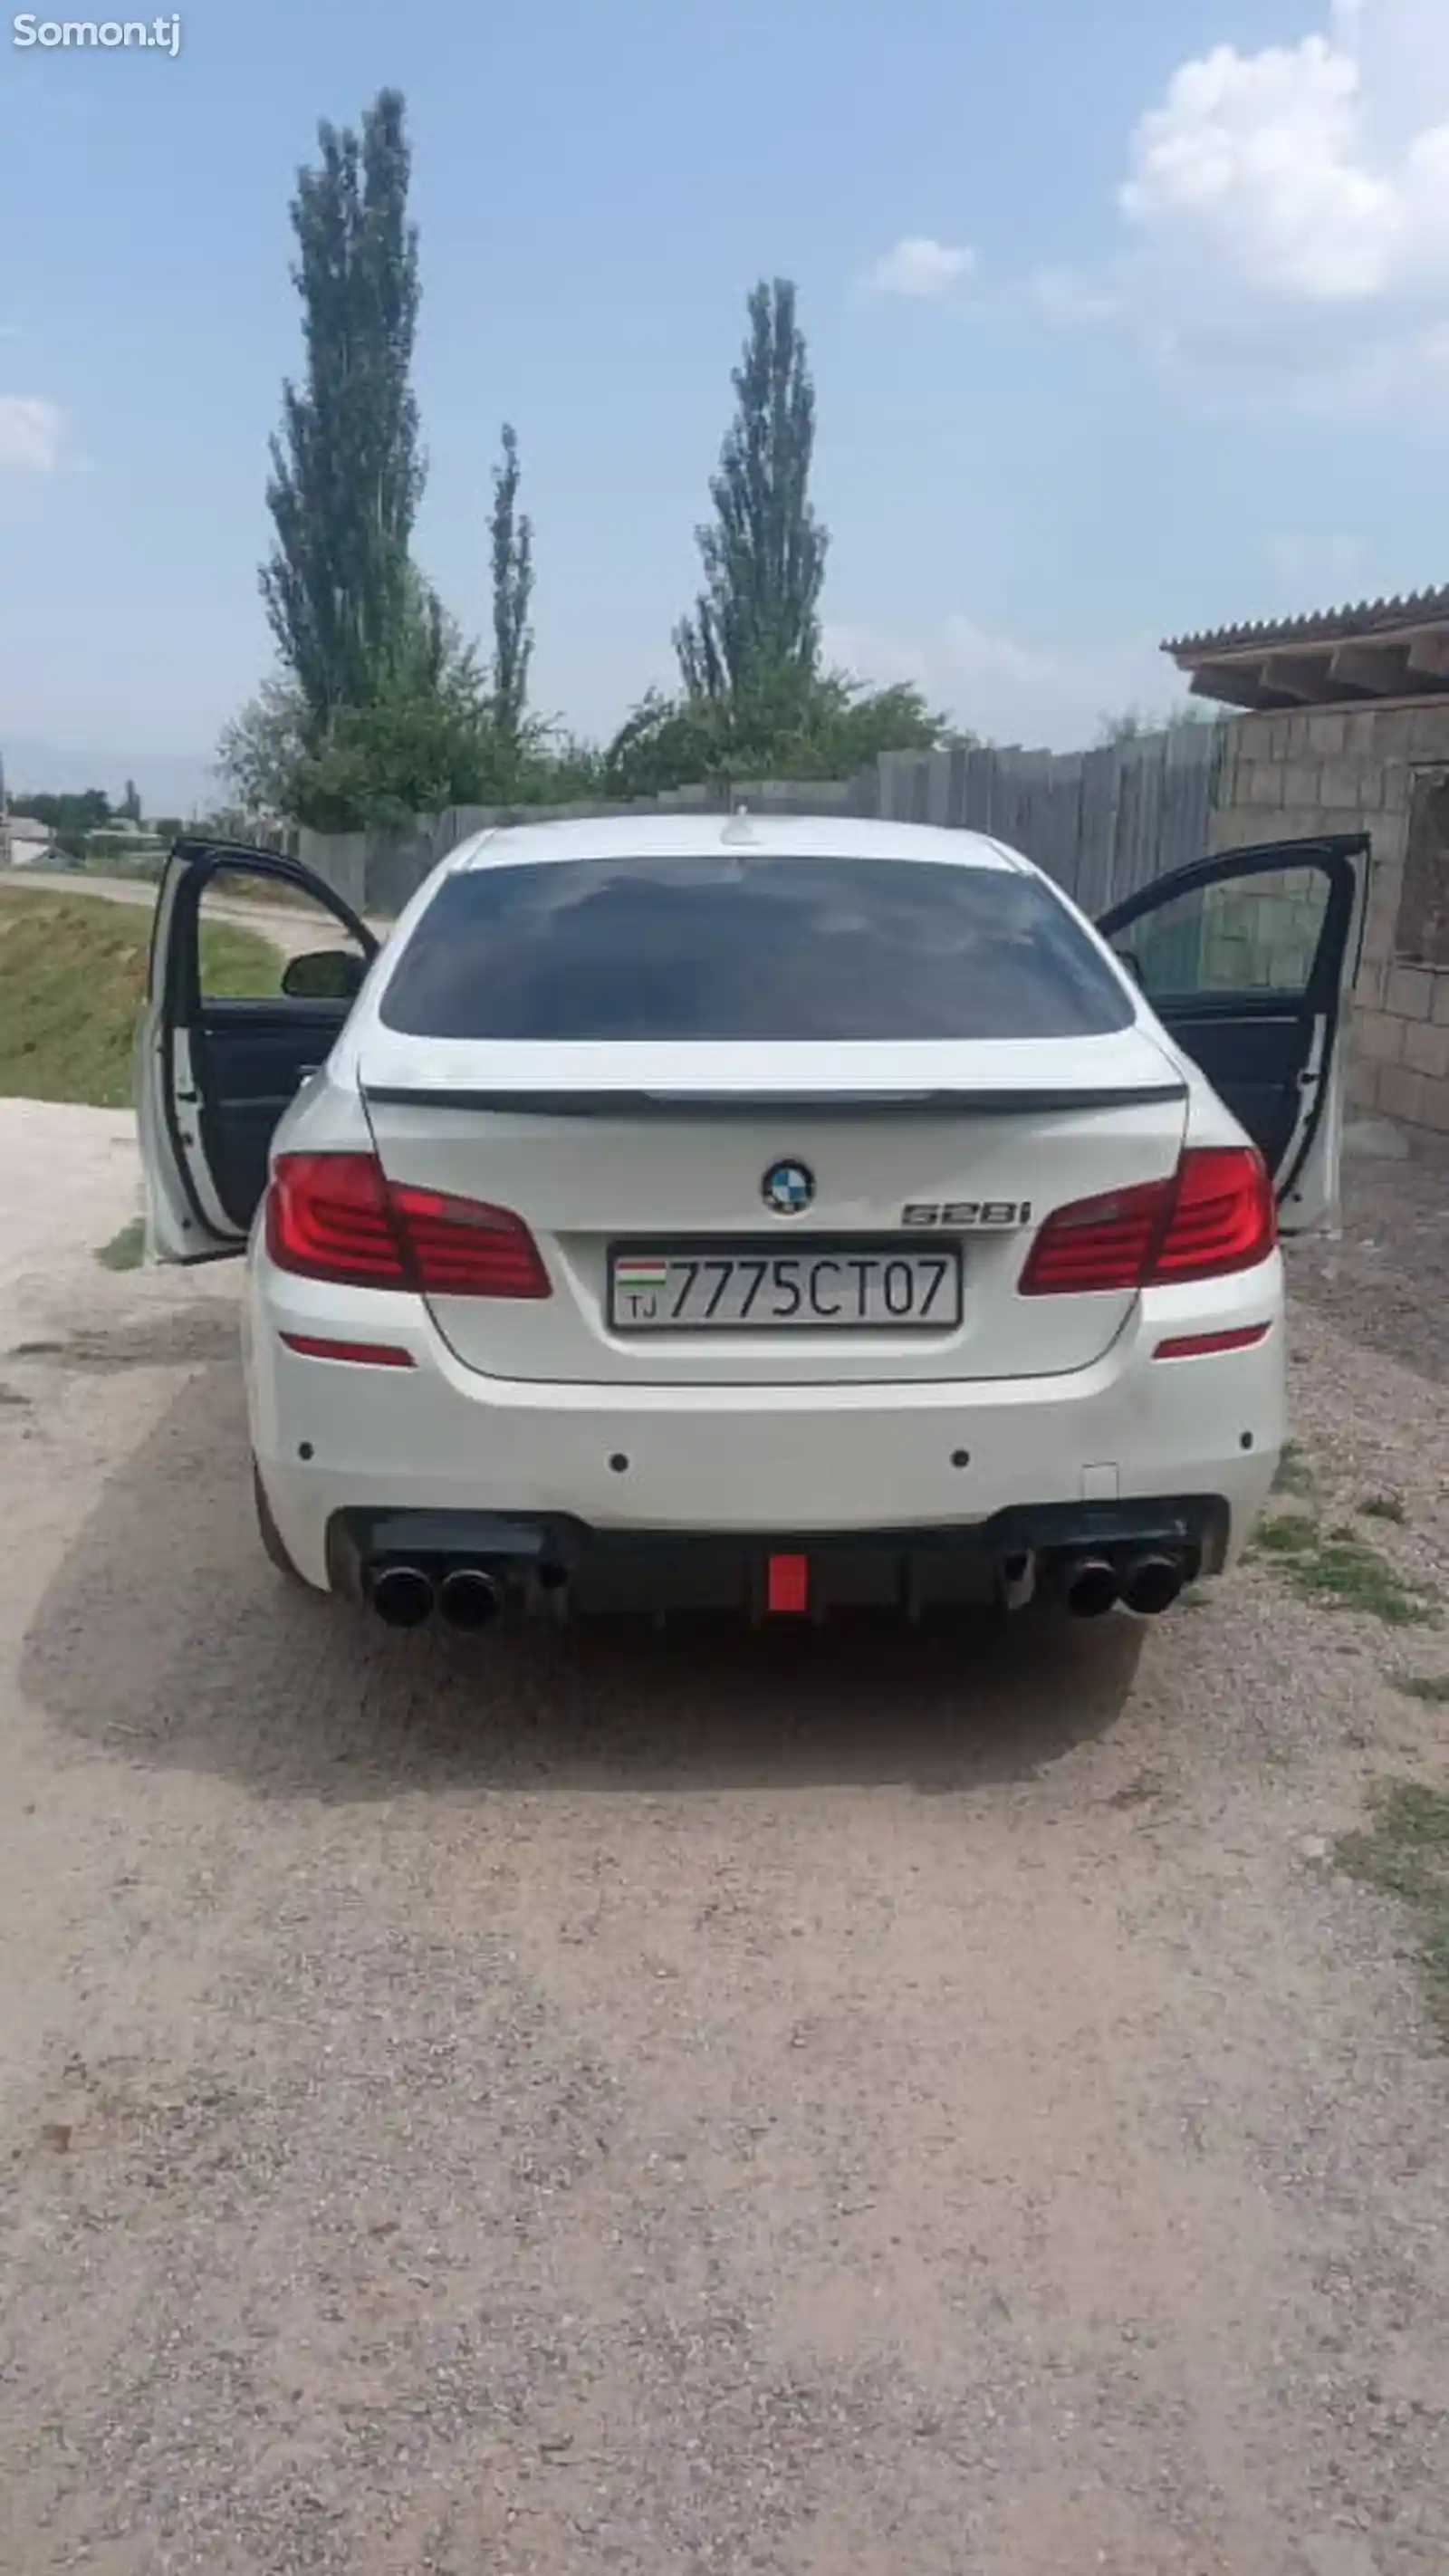 BMW M5, 2012-4